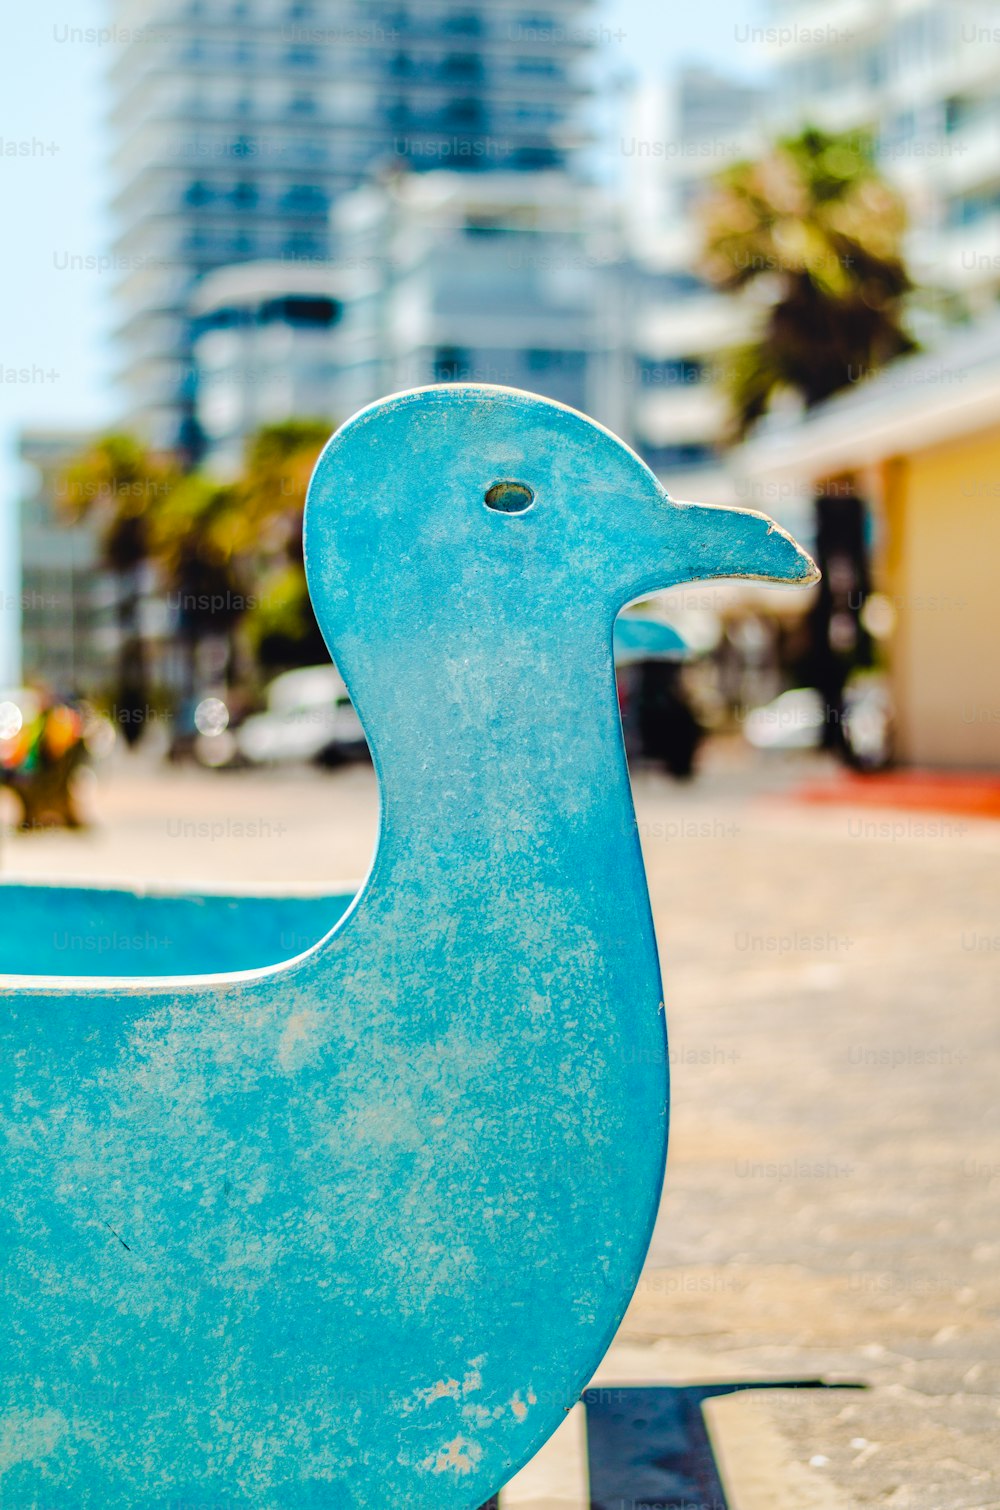 Une statue d’un canard bleu sur un trottoir